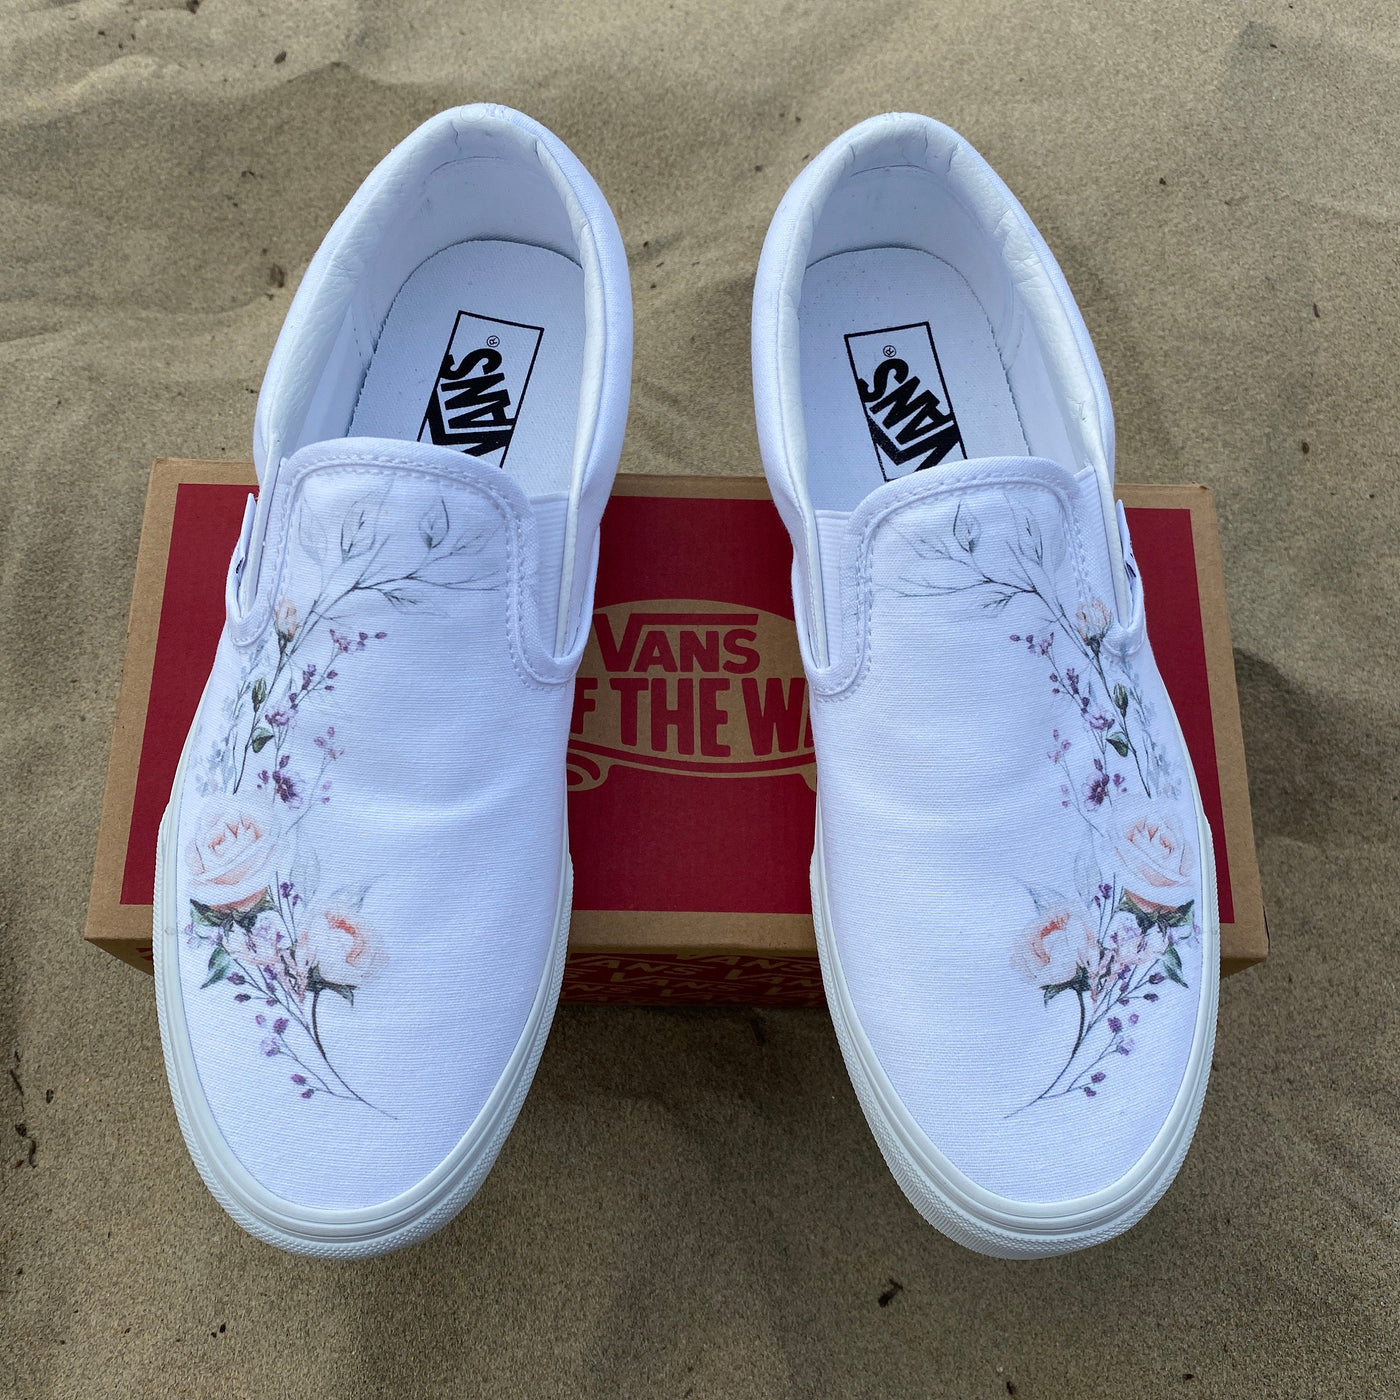 Flower Wreath Wedding Vans Shoes, Custom White Slip On Vans Bridal